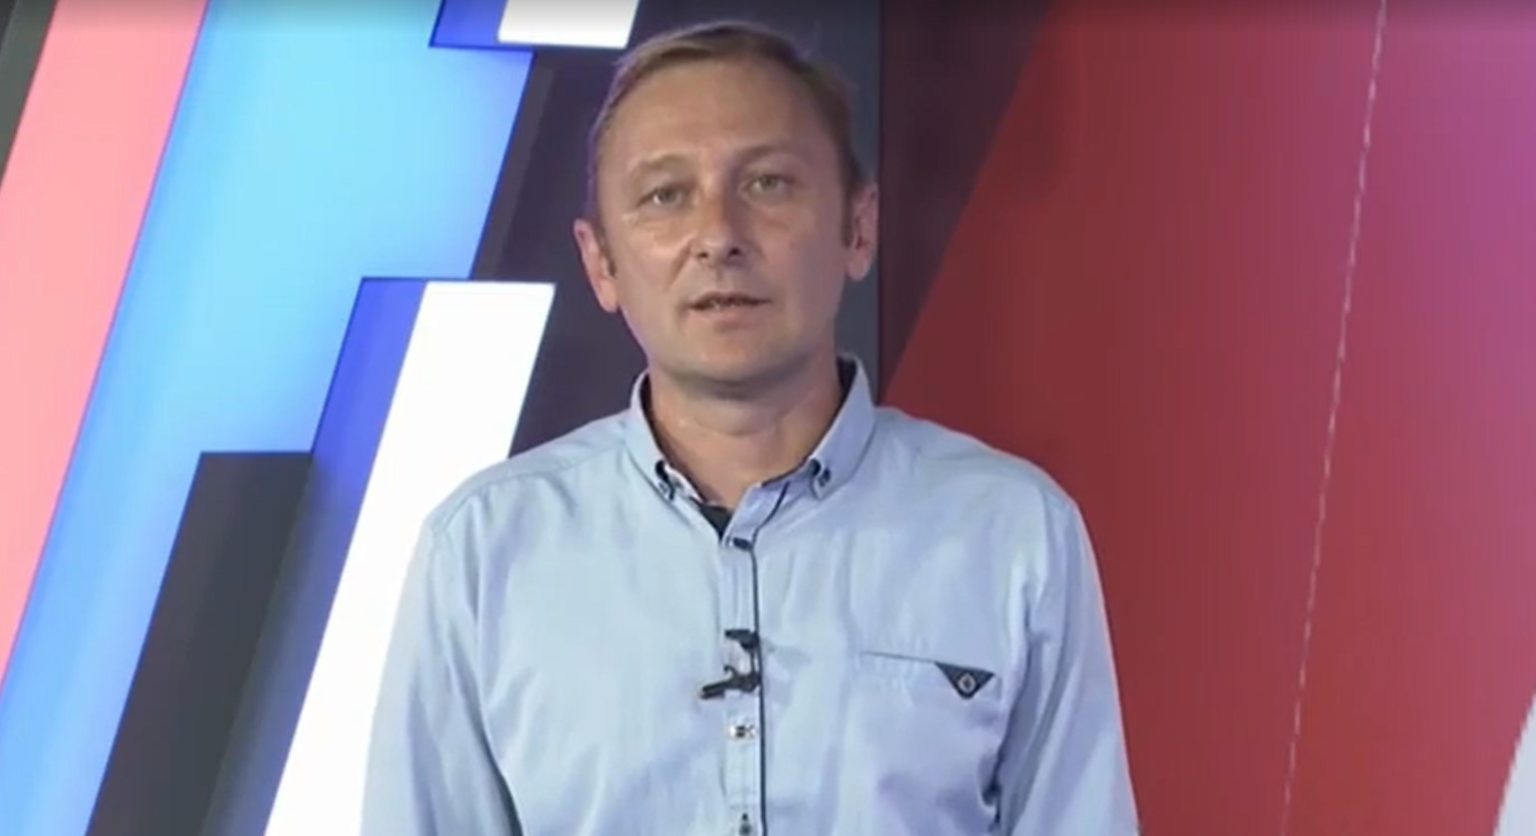 В Крыму кандидат в депутаты сбежал с дебатов в прямом эфире